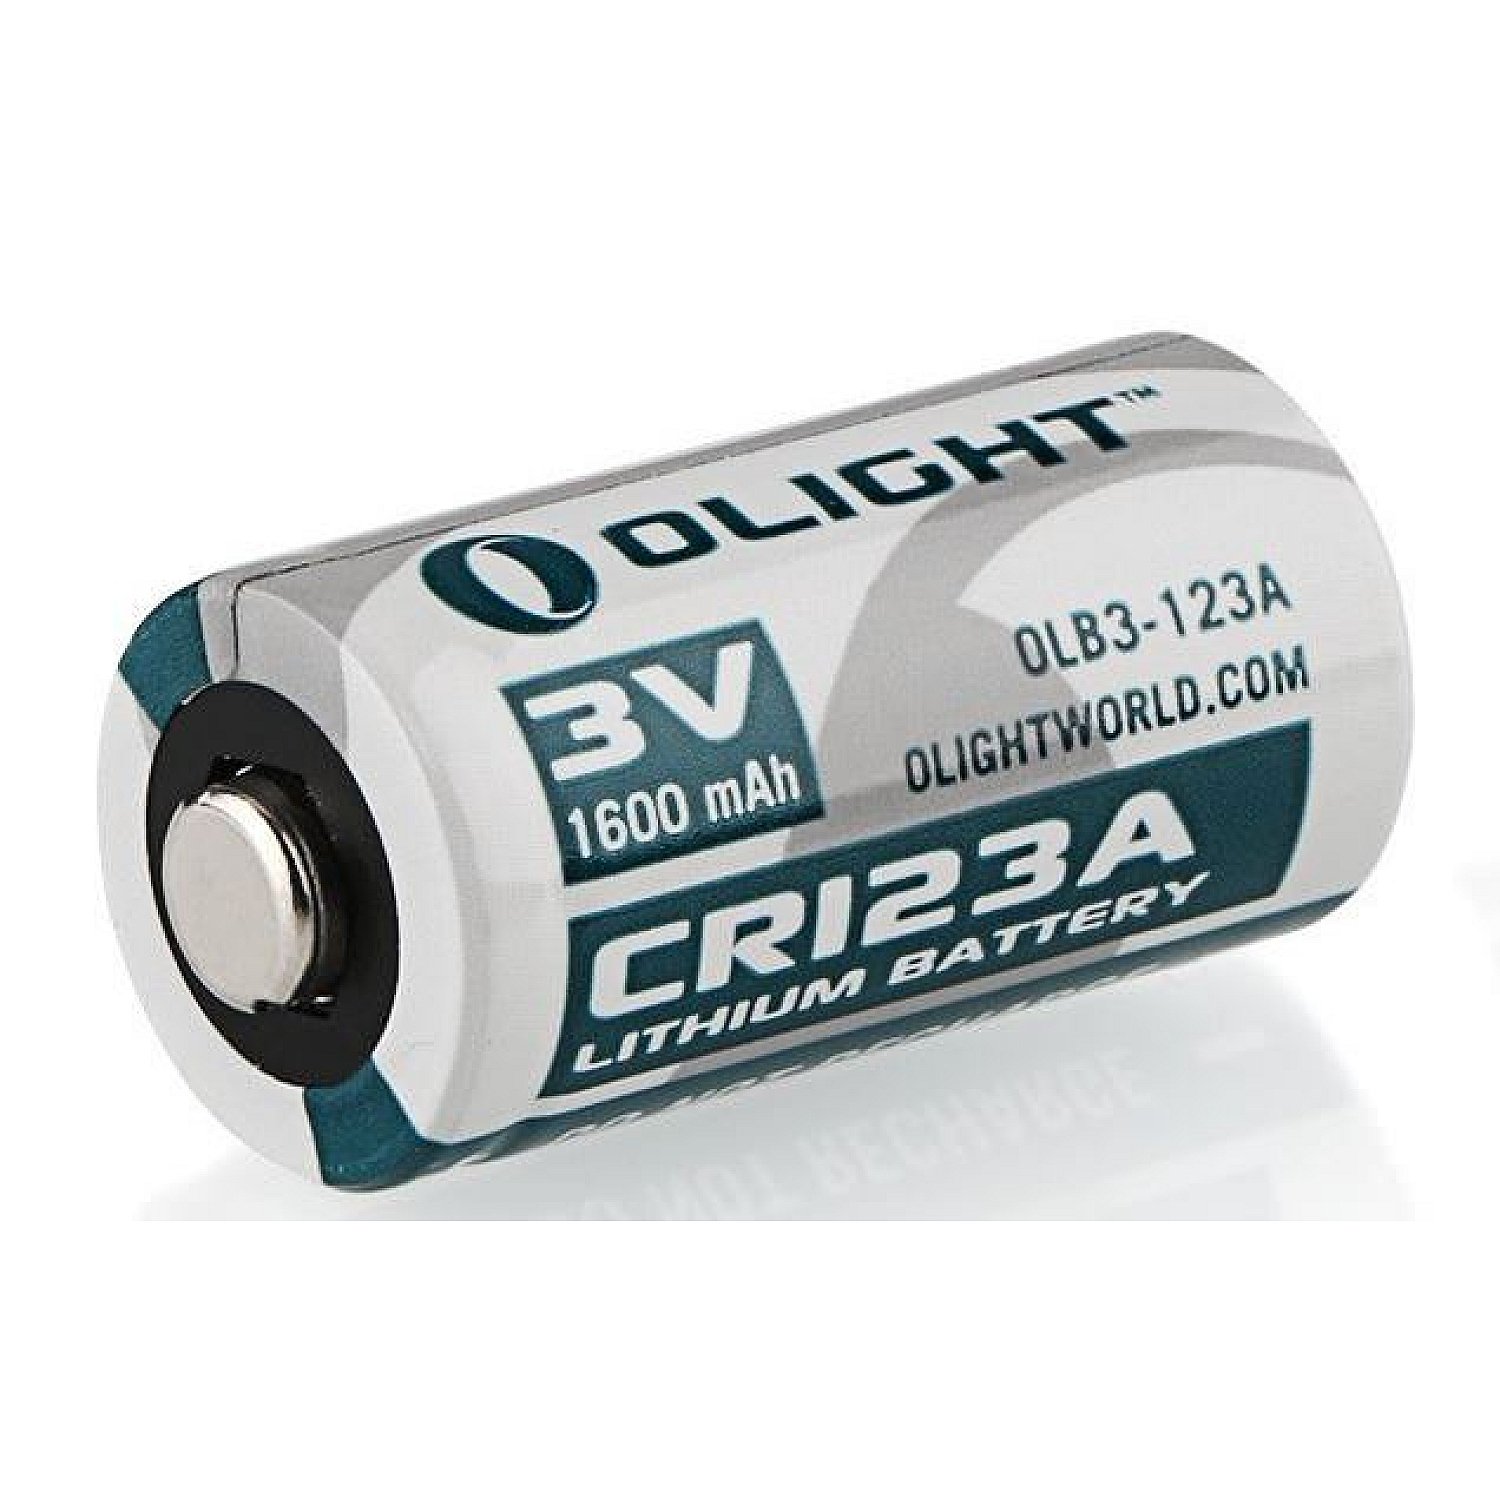 beu brandstof Circulaire Olight CR123A Lithium Batterij| OP de site staat nog veel meer van Olight